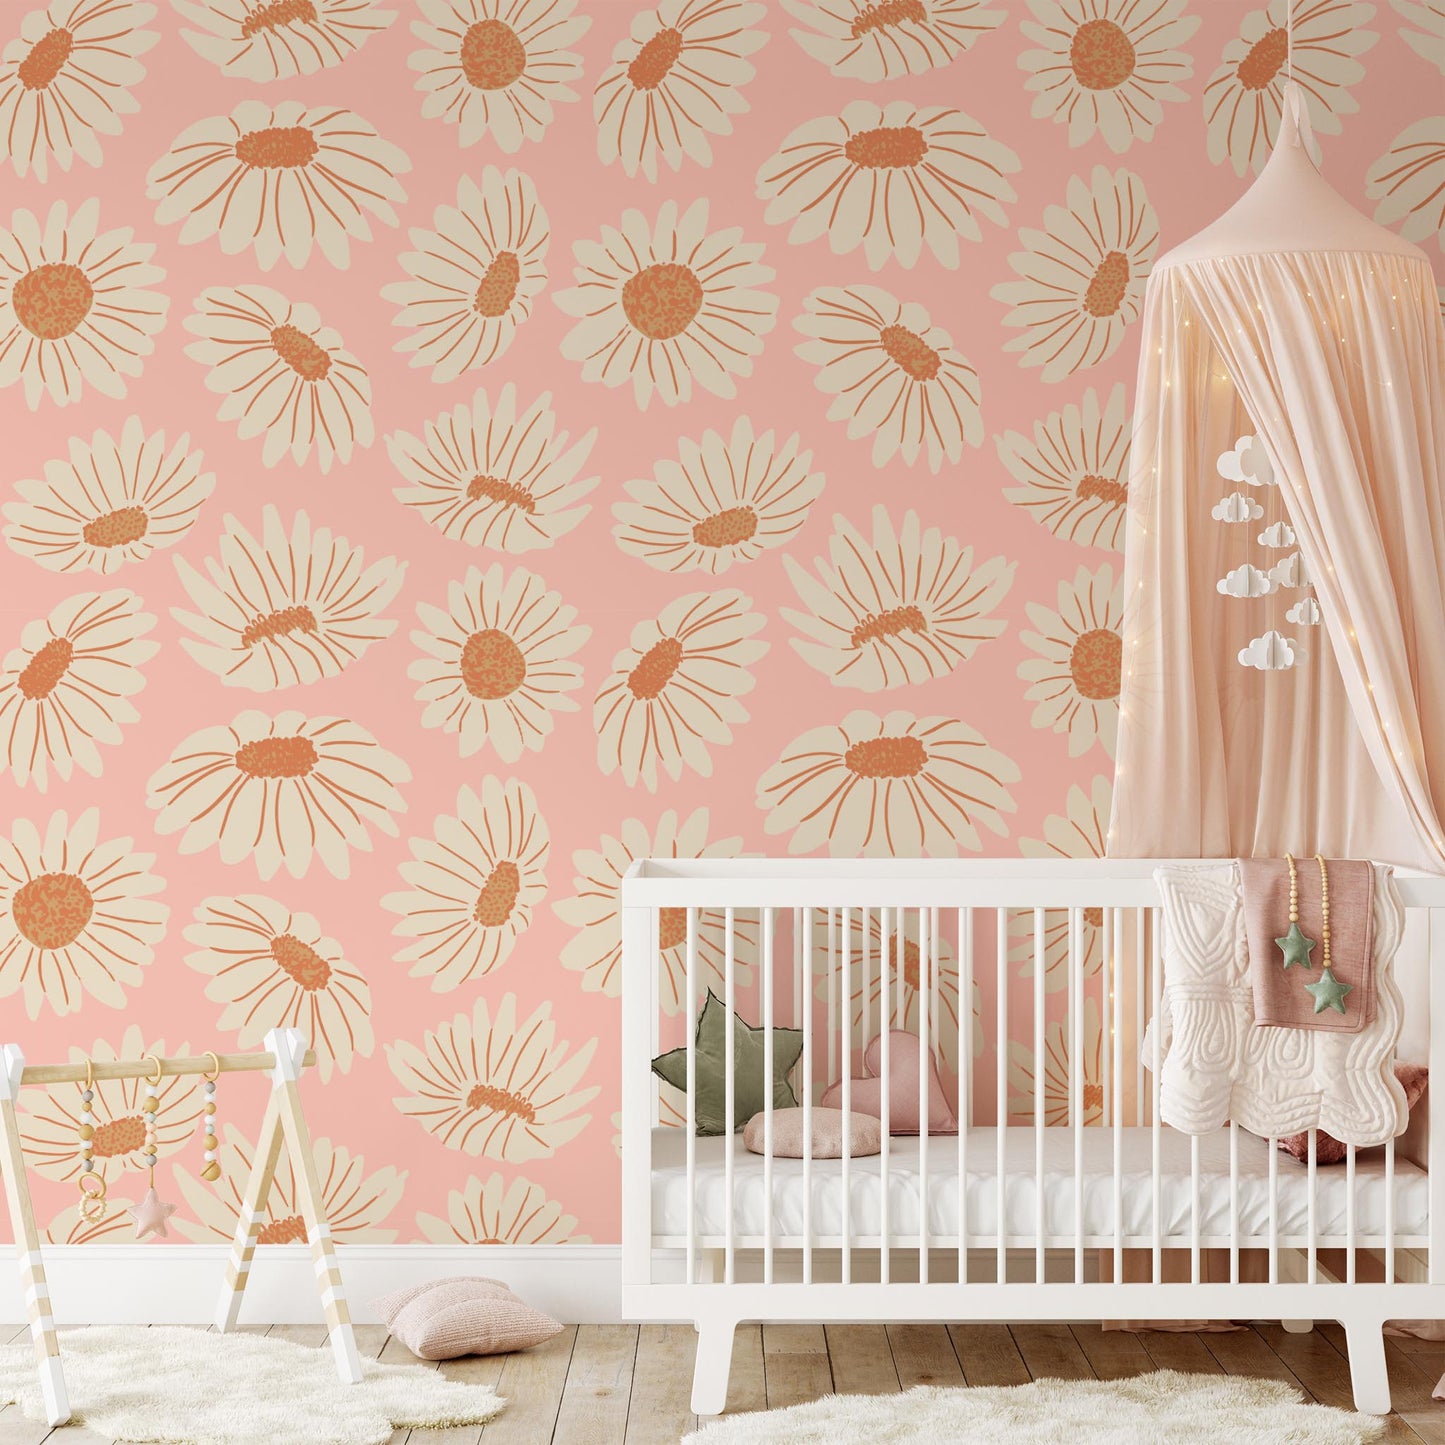 Nursery room preview of Daisies Wallpaper in Pink by artist Brenda Bird